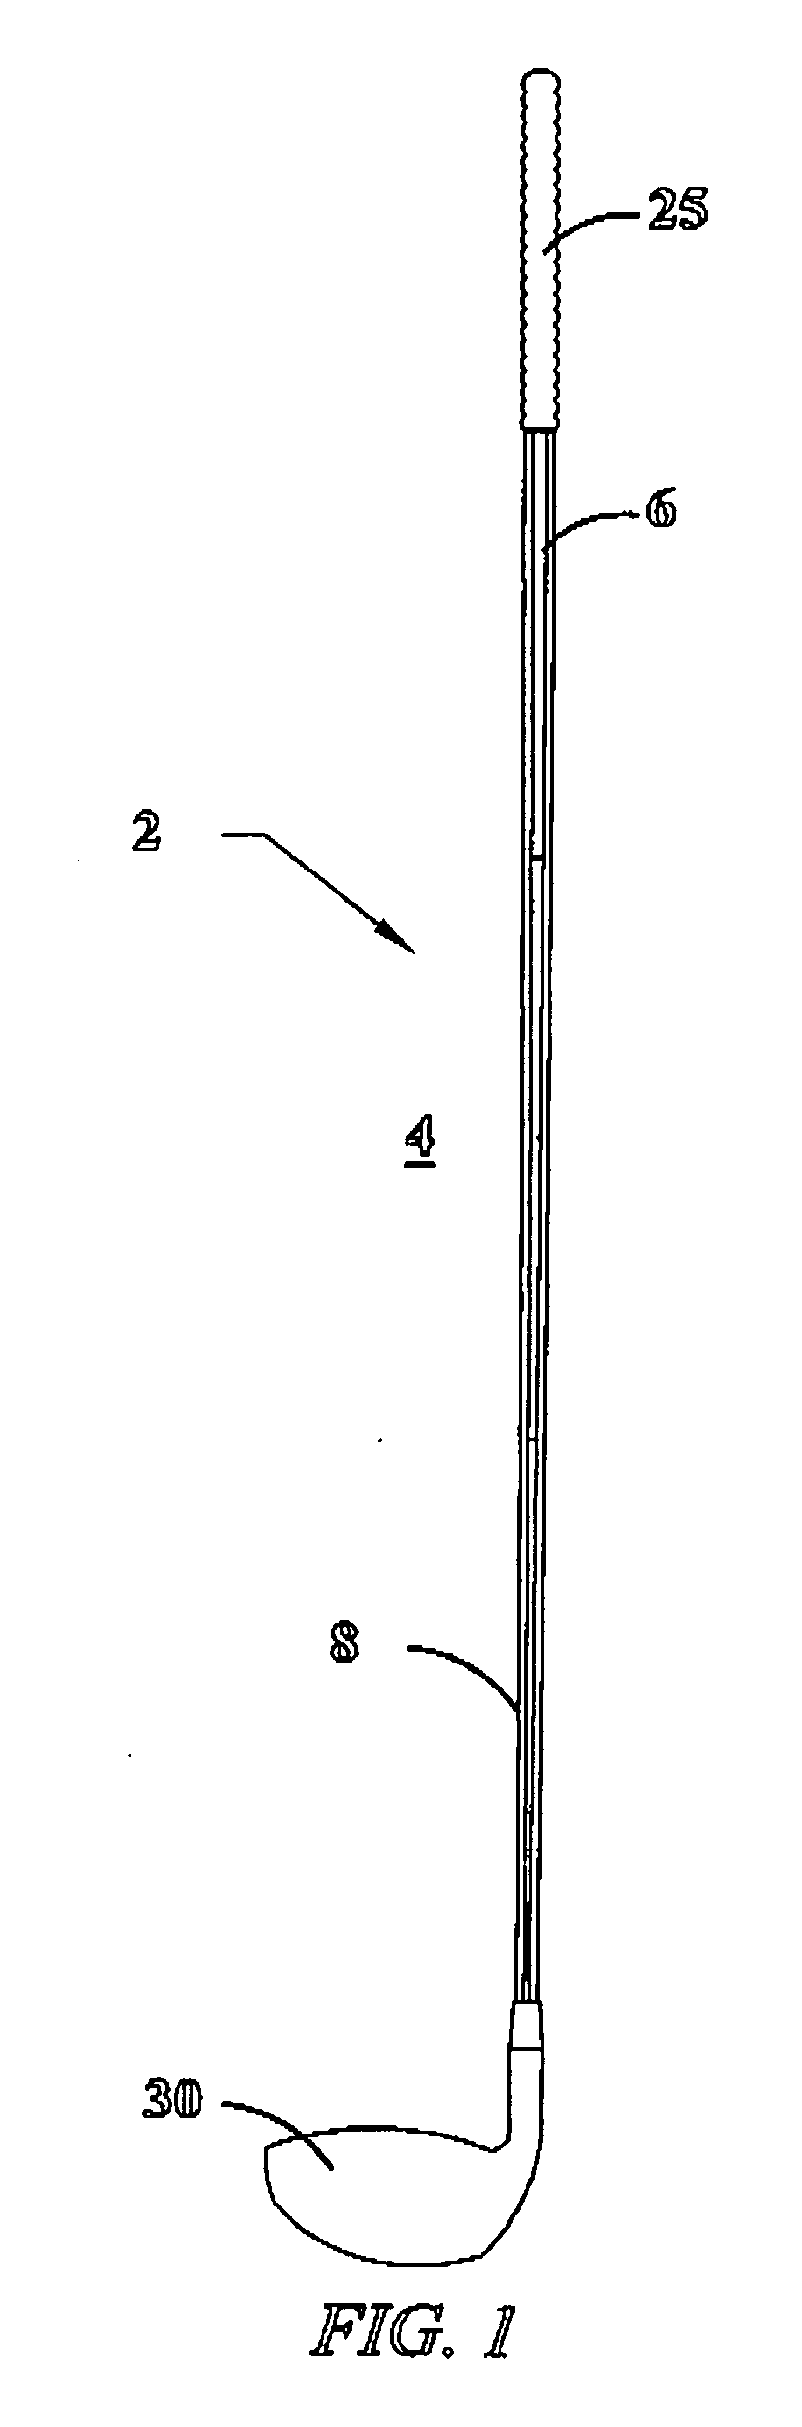 Adjustable stiffness shaft structure